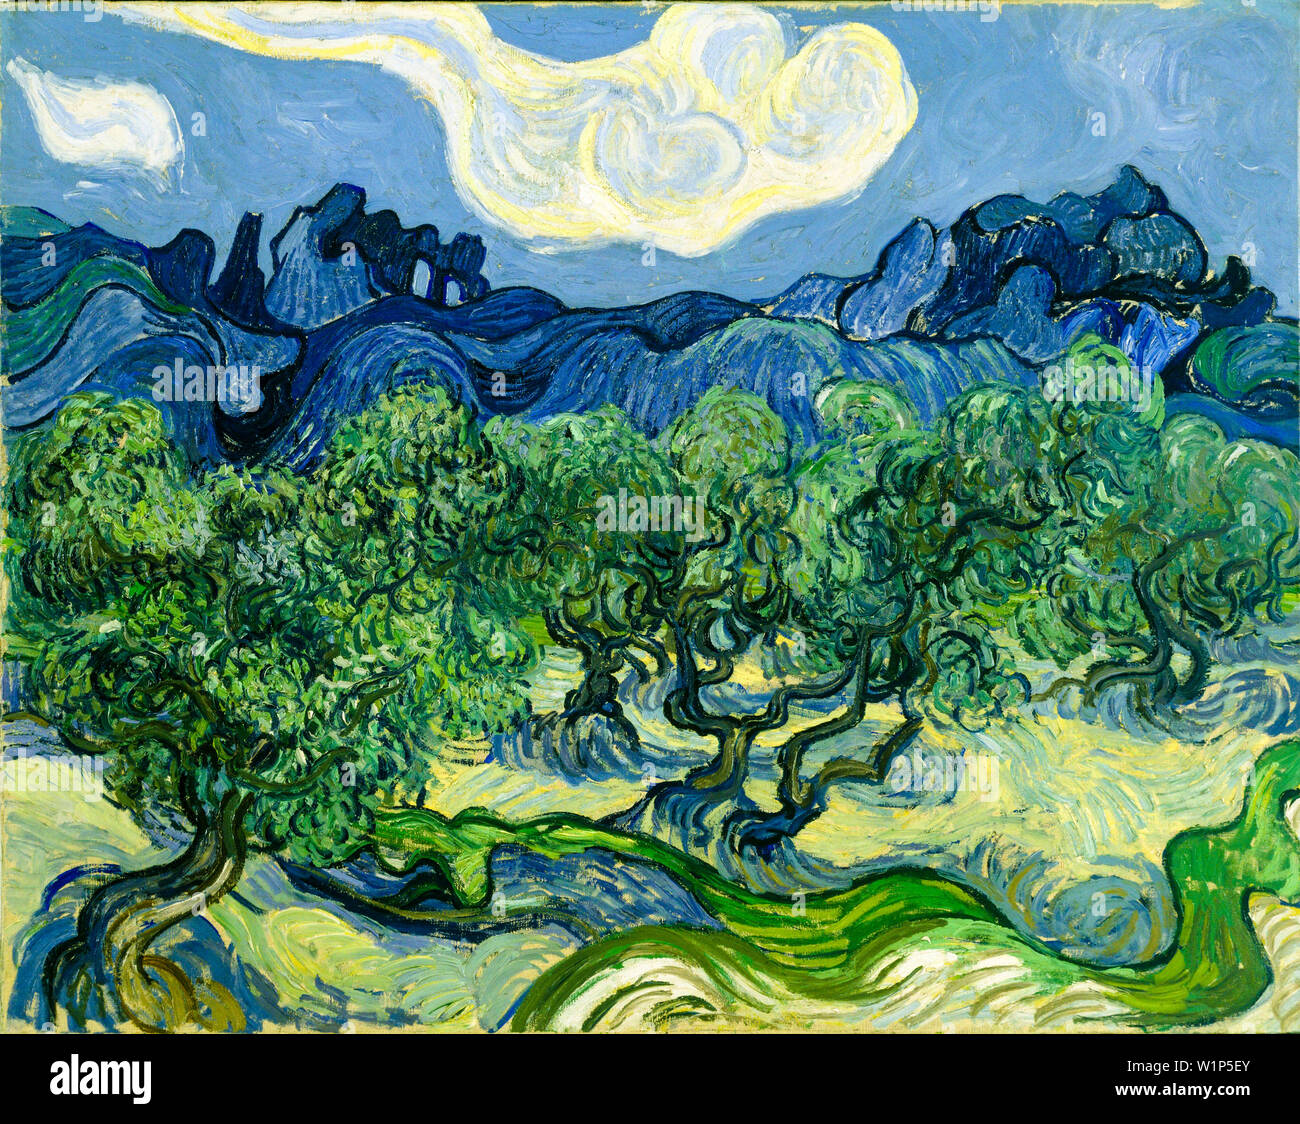 Vincent Van Gogh, les oliviers, peinture de paysage post-impressionniste, 1889 Banque D'Images